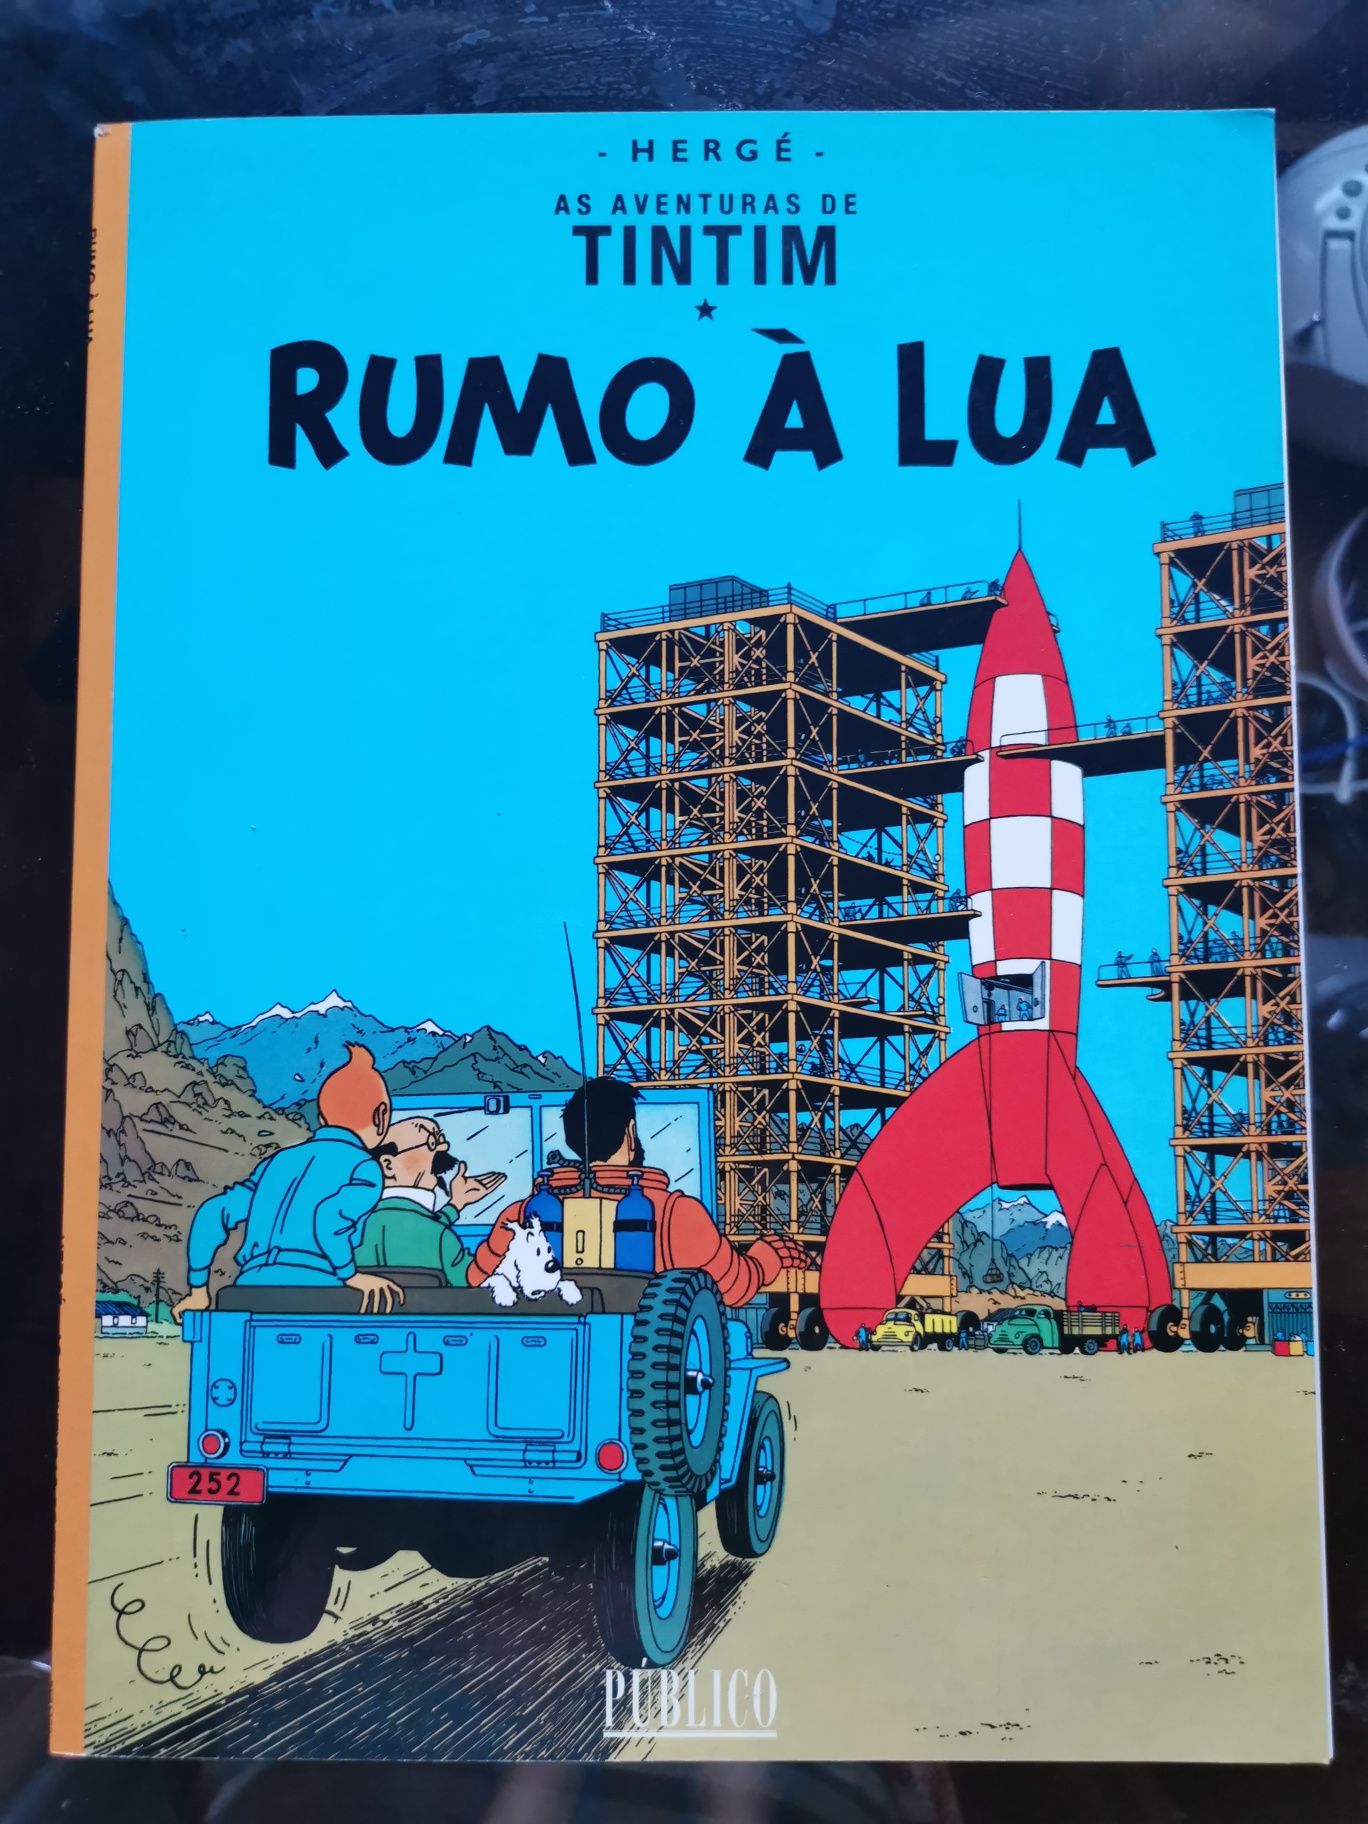 As aventuras de Tintin - rumo à lua